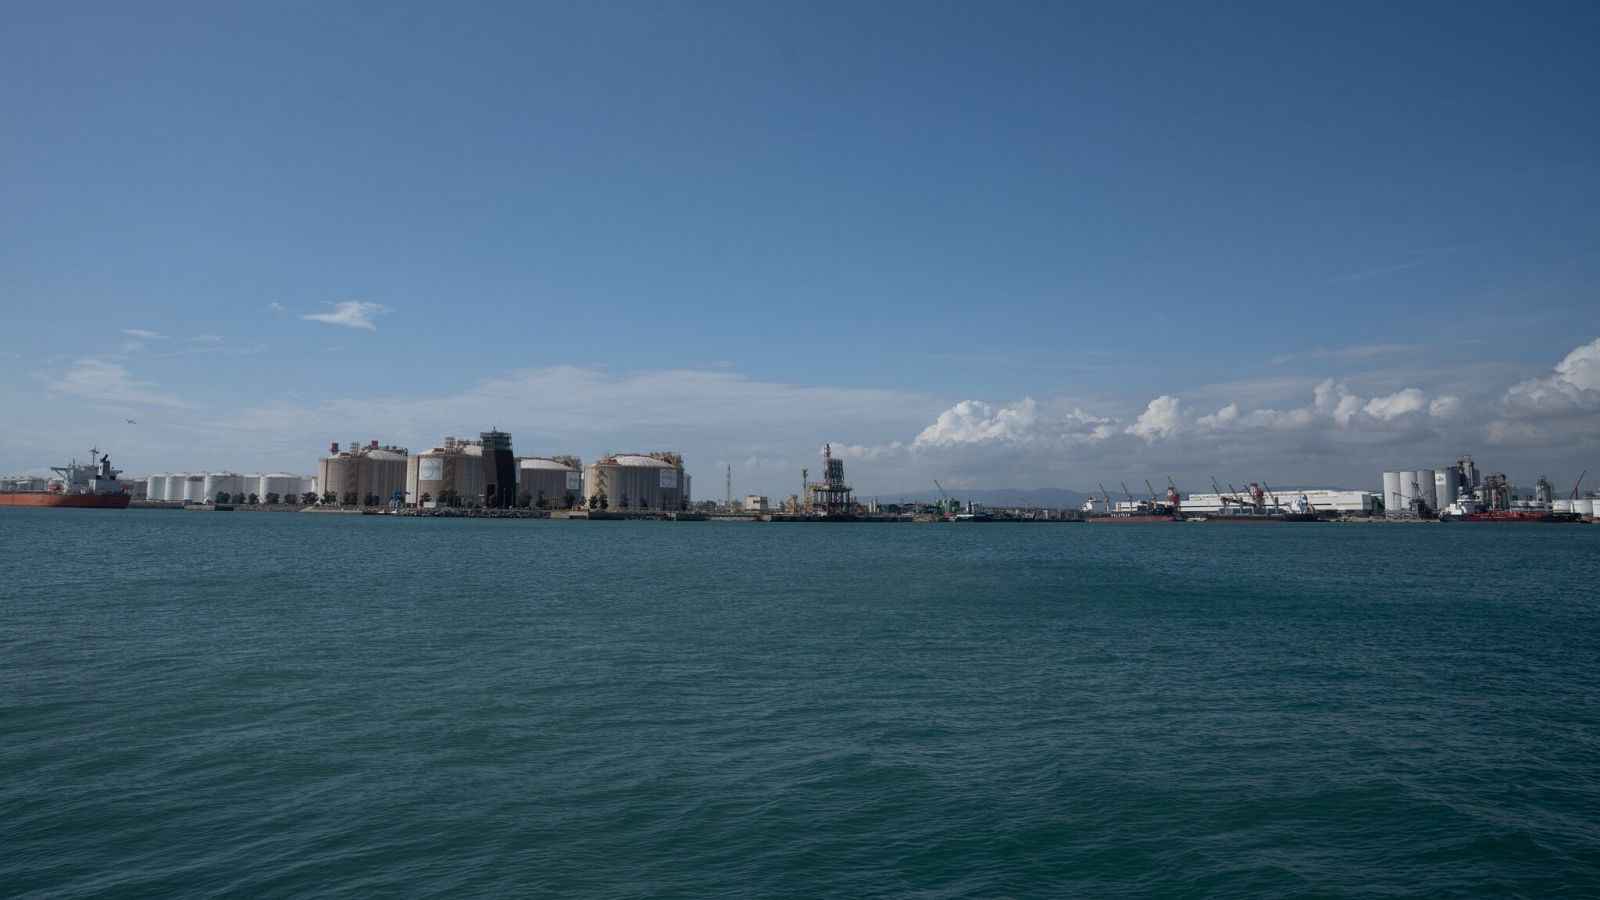 Puerto de Barcelona, desde donde saldría el nuevo conducto BarMar